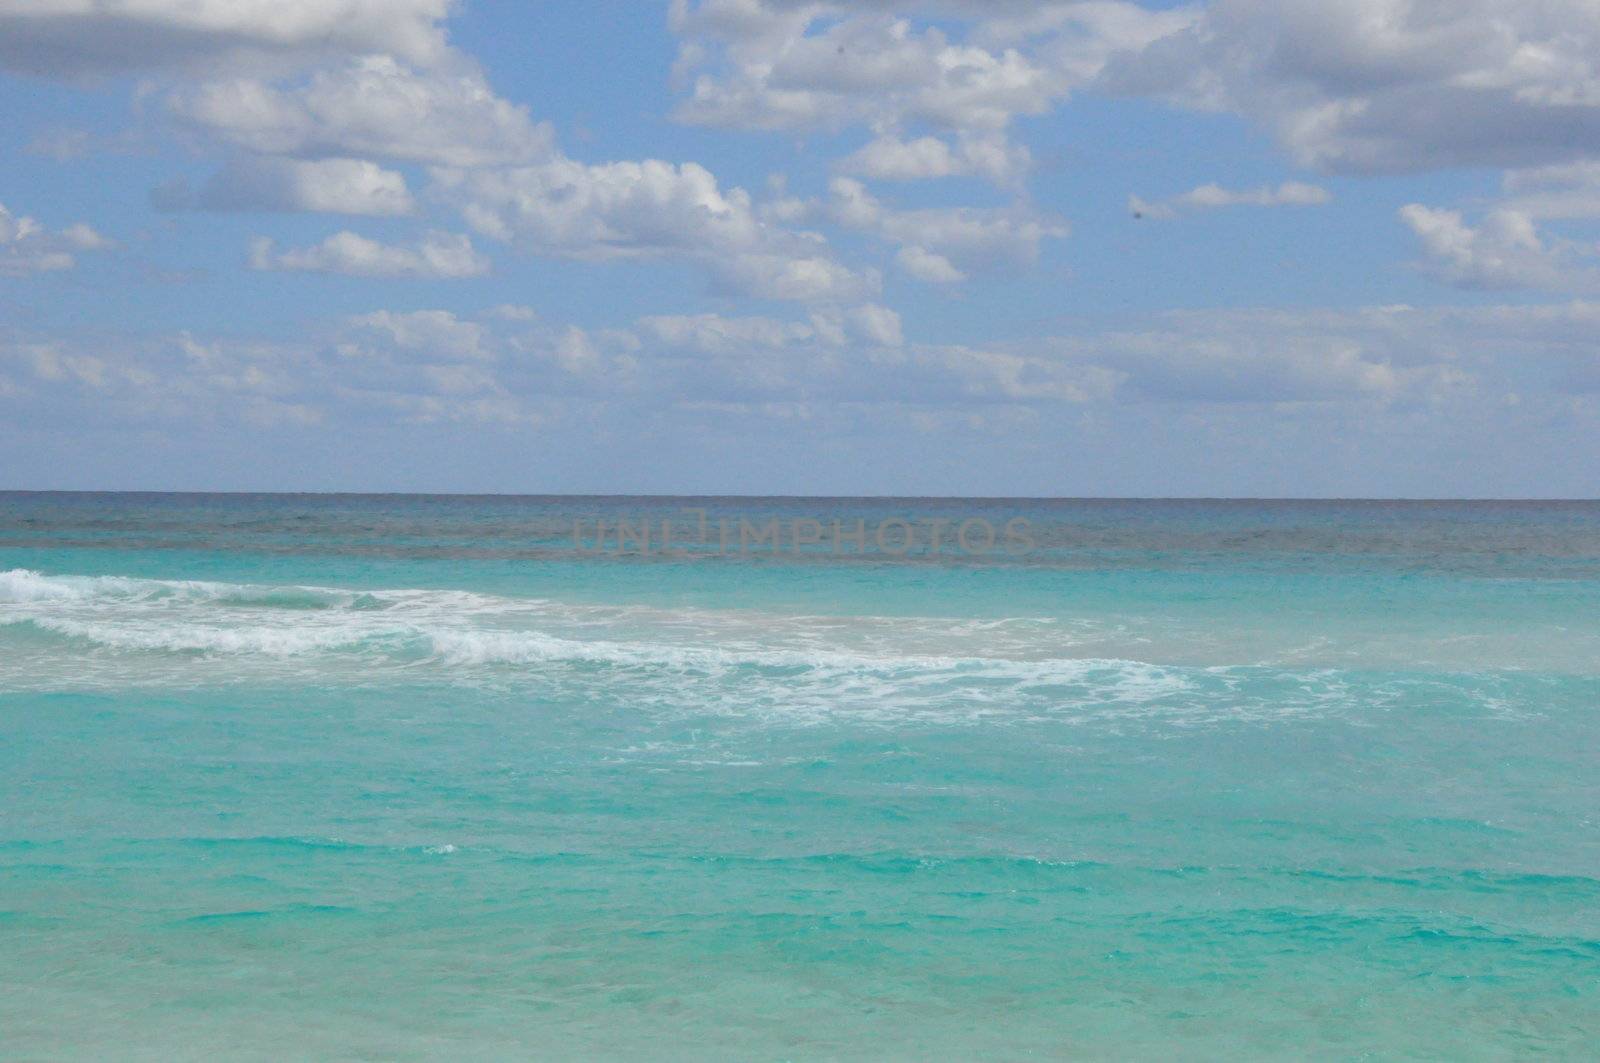 Beach in Cancun, Mexico